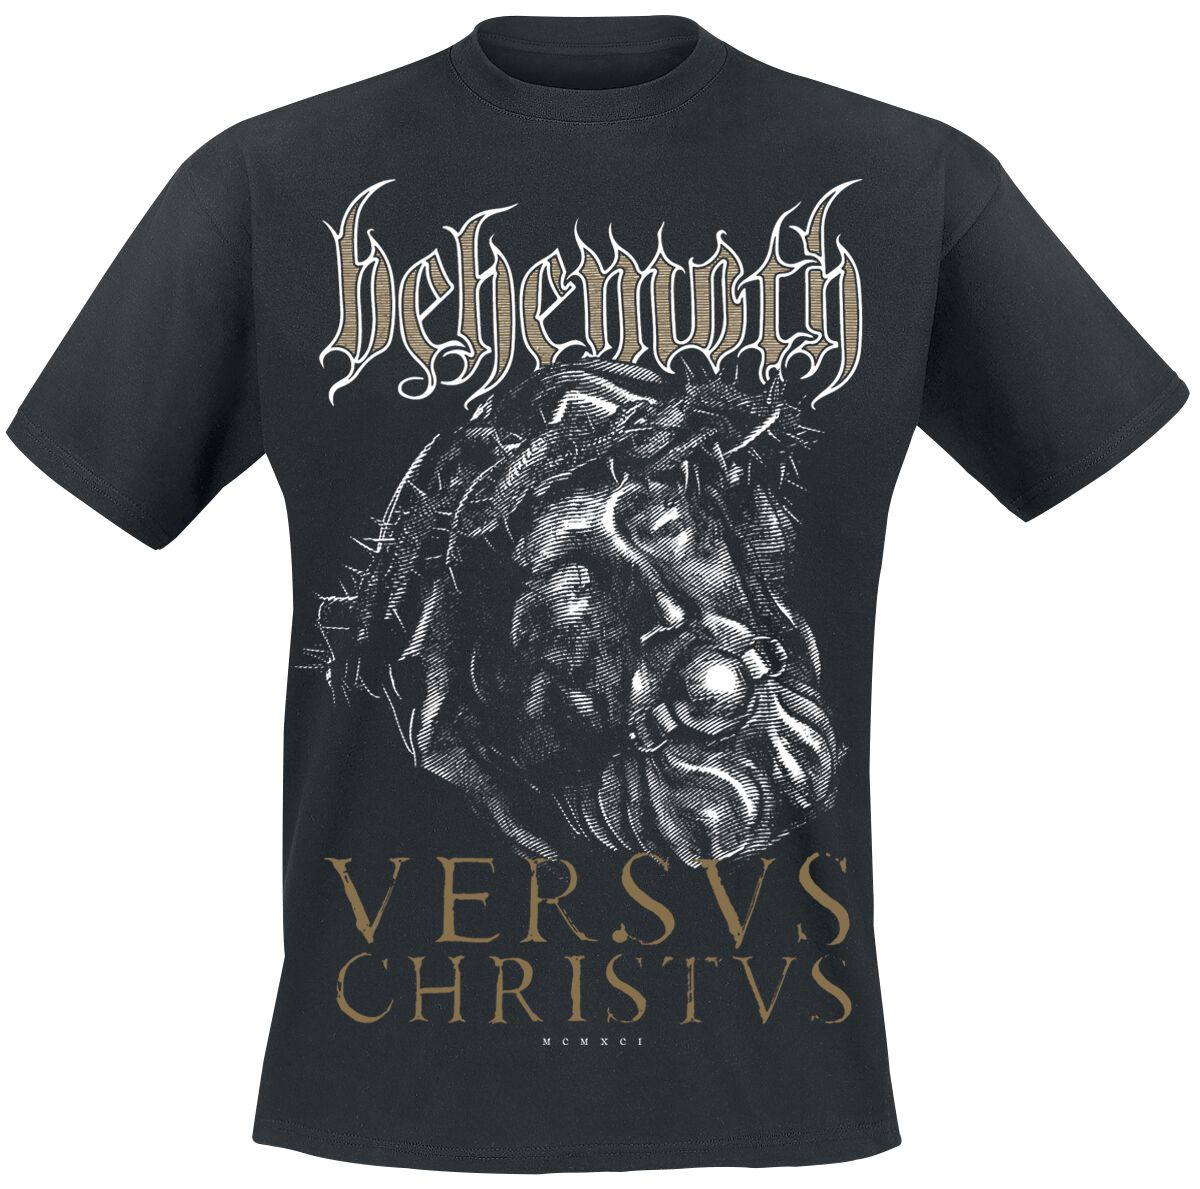 Behemoth T-Shirt - Versvs Christvs - S bis 4XL - für Männer - Größe 3XL - schwarz  - Lizenziertes Merchandise!